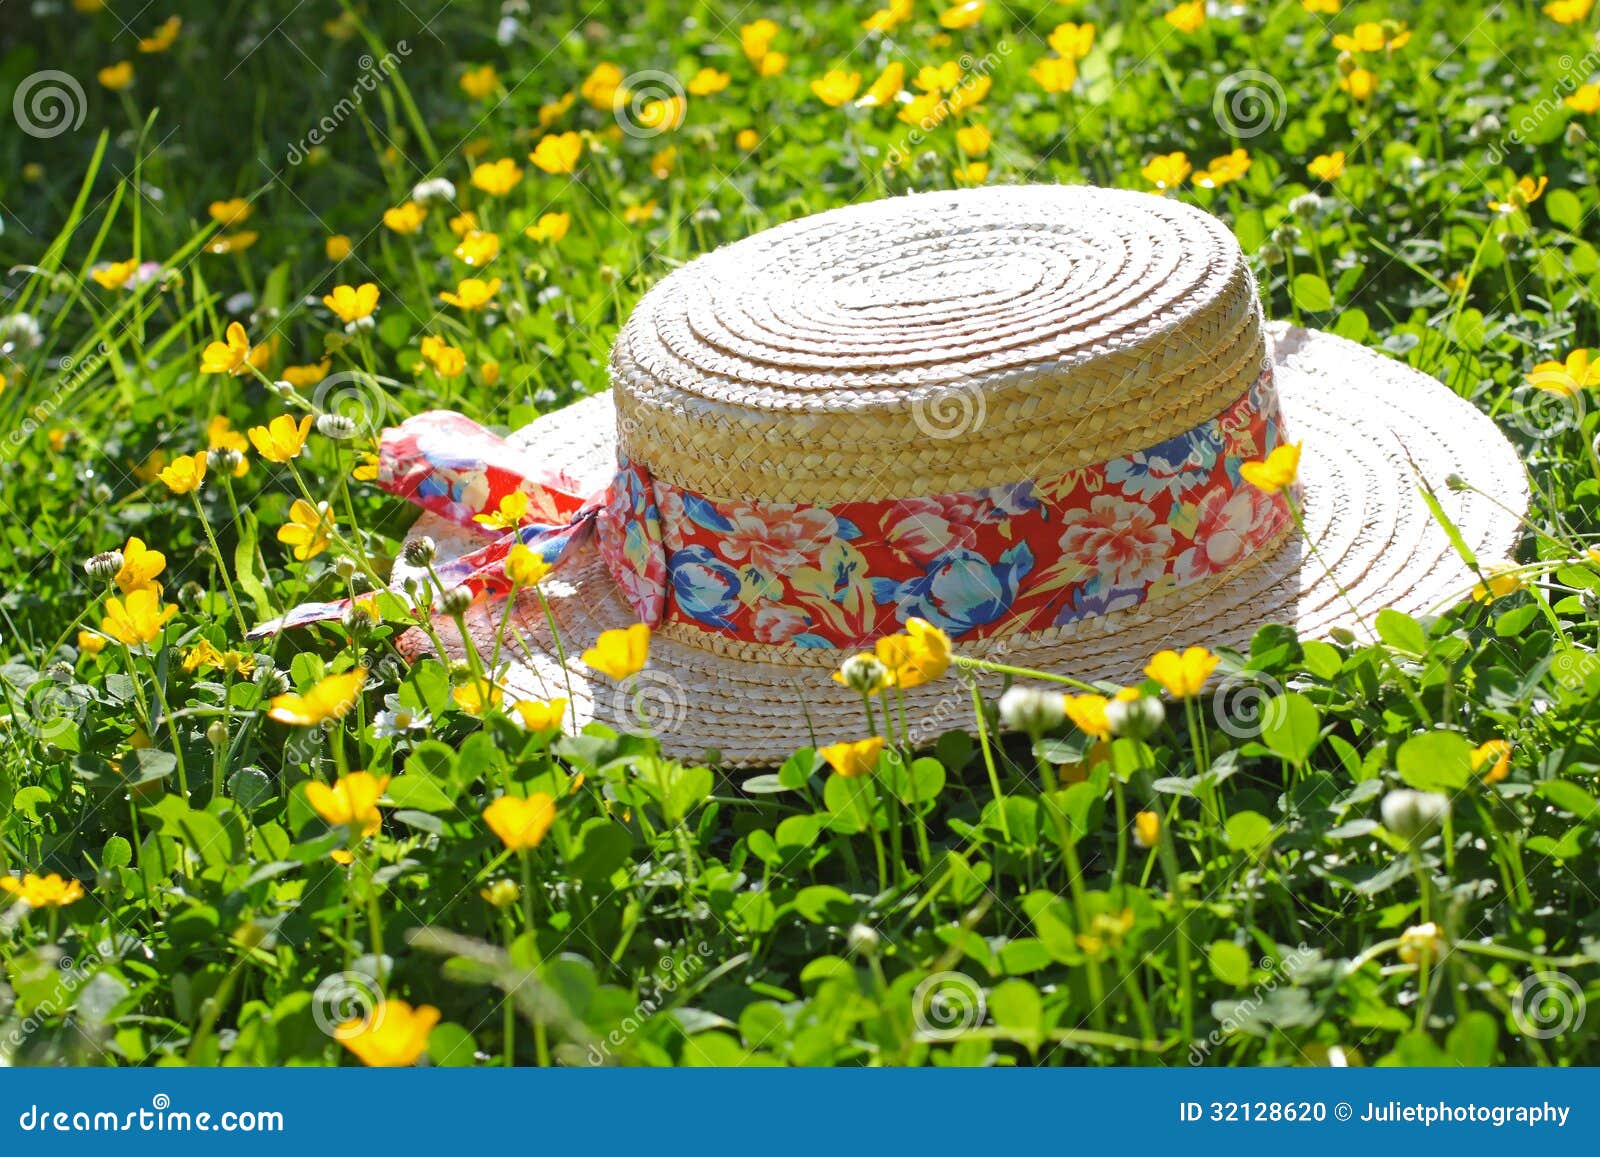 В большой соломенной шляпе расписанной чудесными цветами. Соломенная шляпа на траве. Соломенная шляпка в траве траве. Цветочная композиция в соломенной шляпе. Маленькие соломенные шляпки на лето.